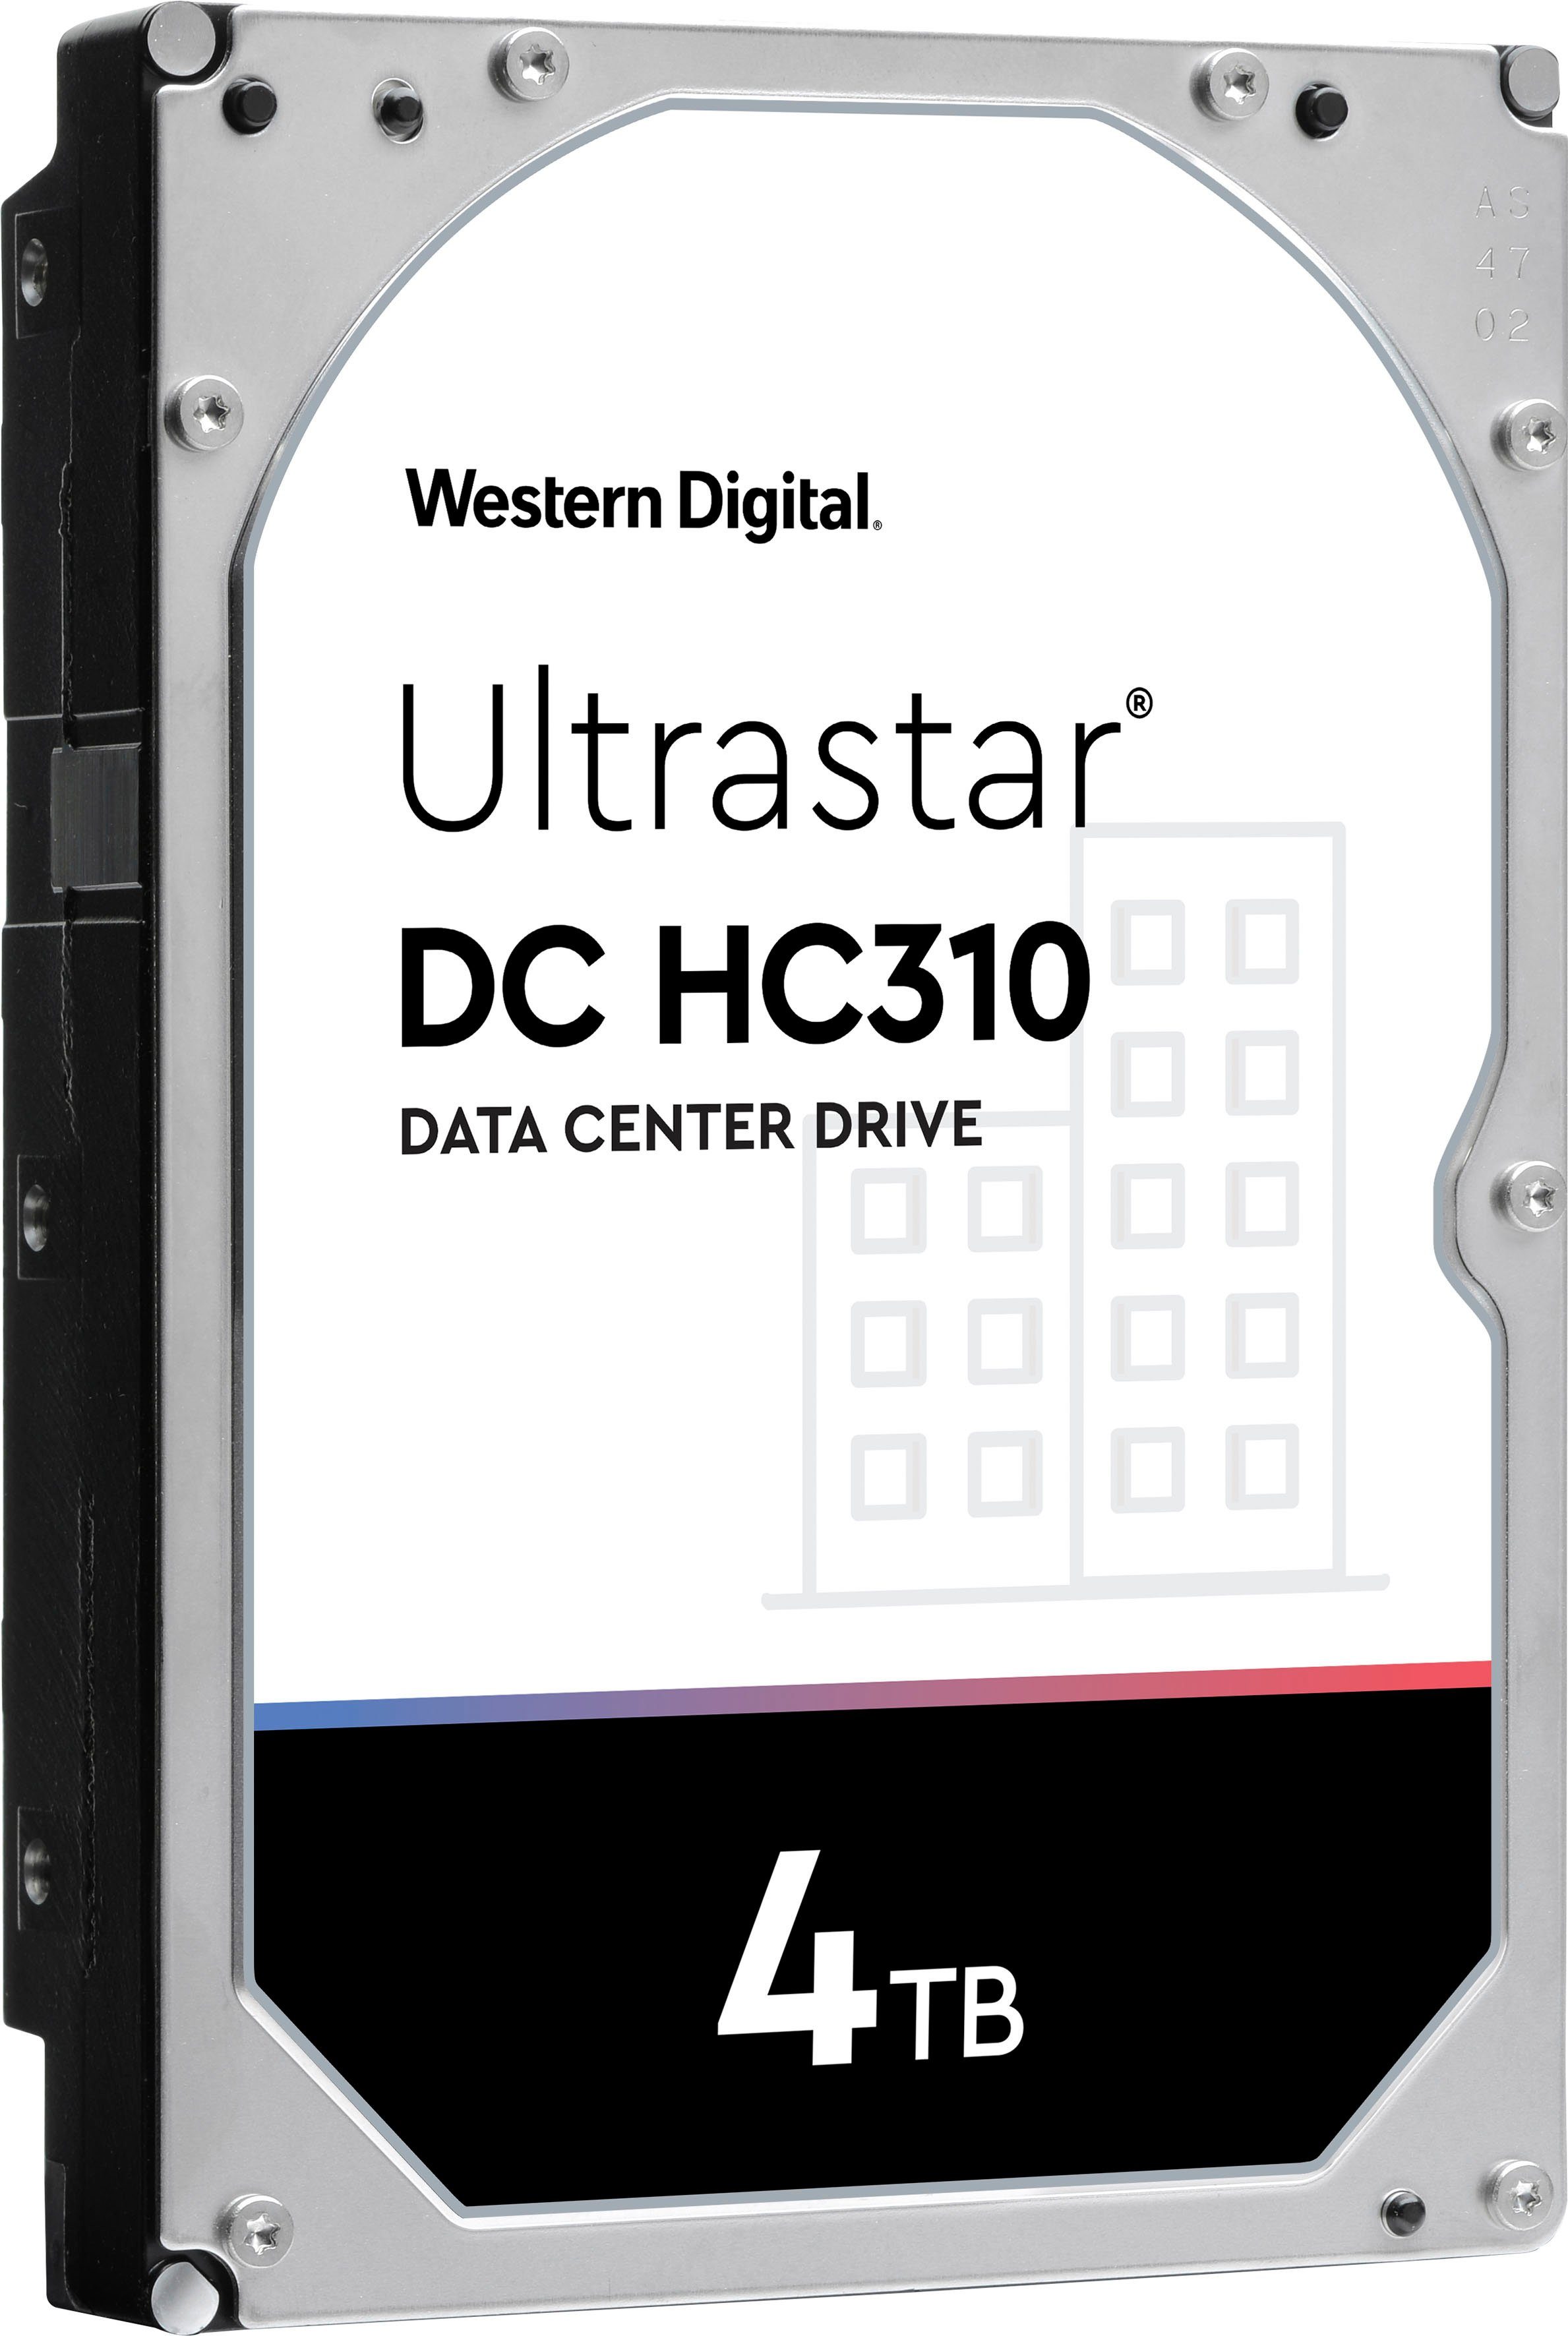 Western Digital Ultrastar DC HC310 4TB 512e HDD-Festplatte (4 TB) 3,5", Bulk